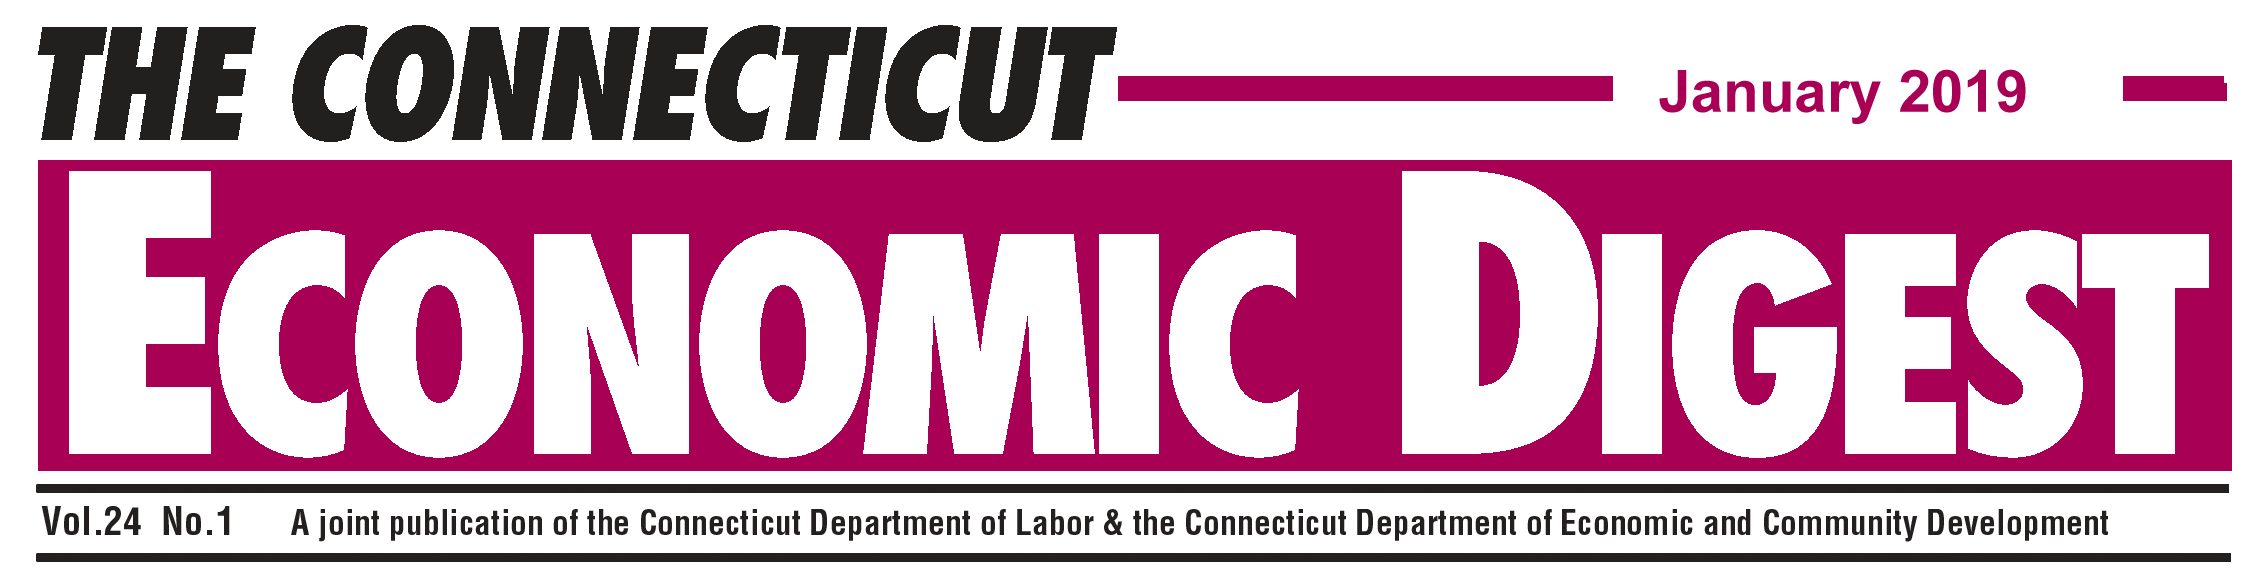 January 2019 Connecticut Economic Digest